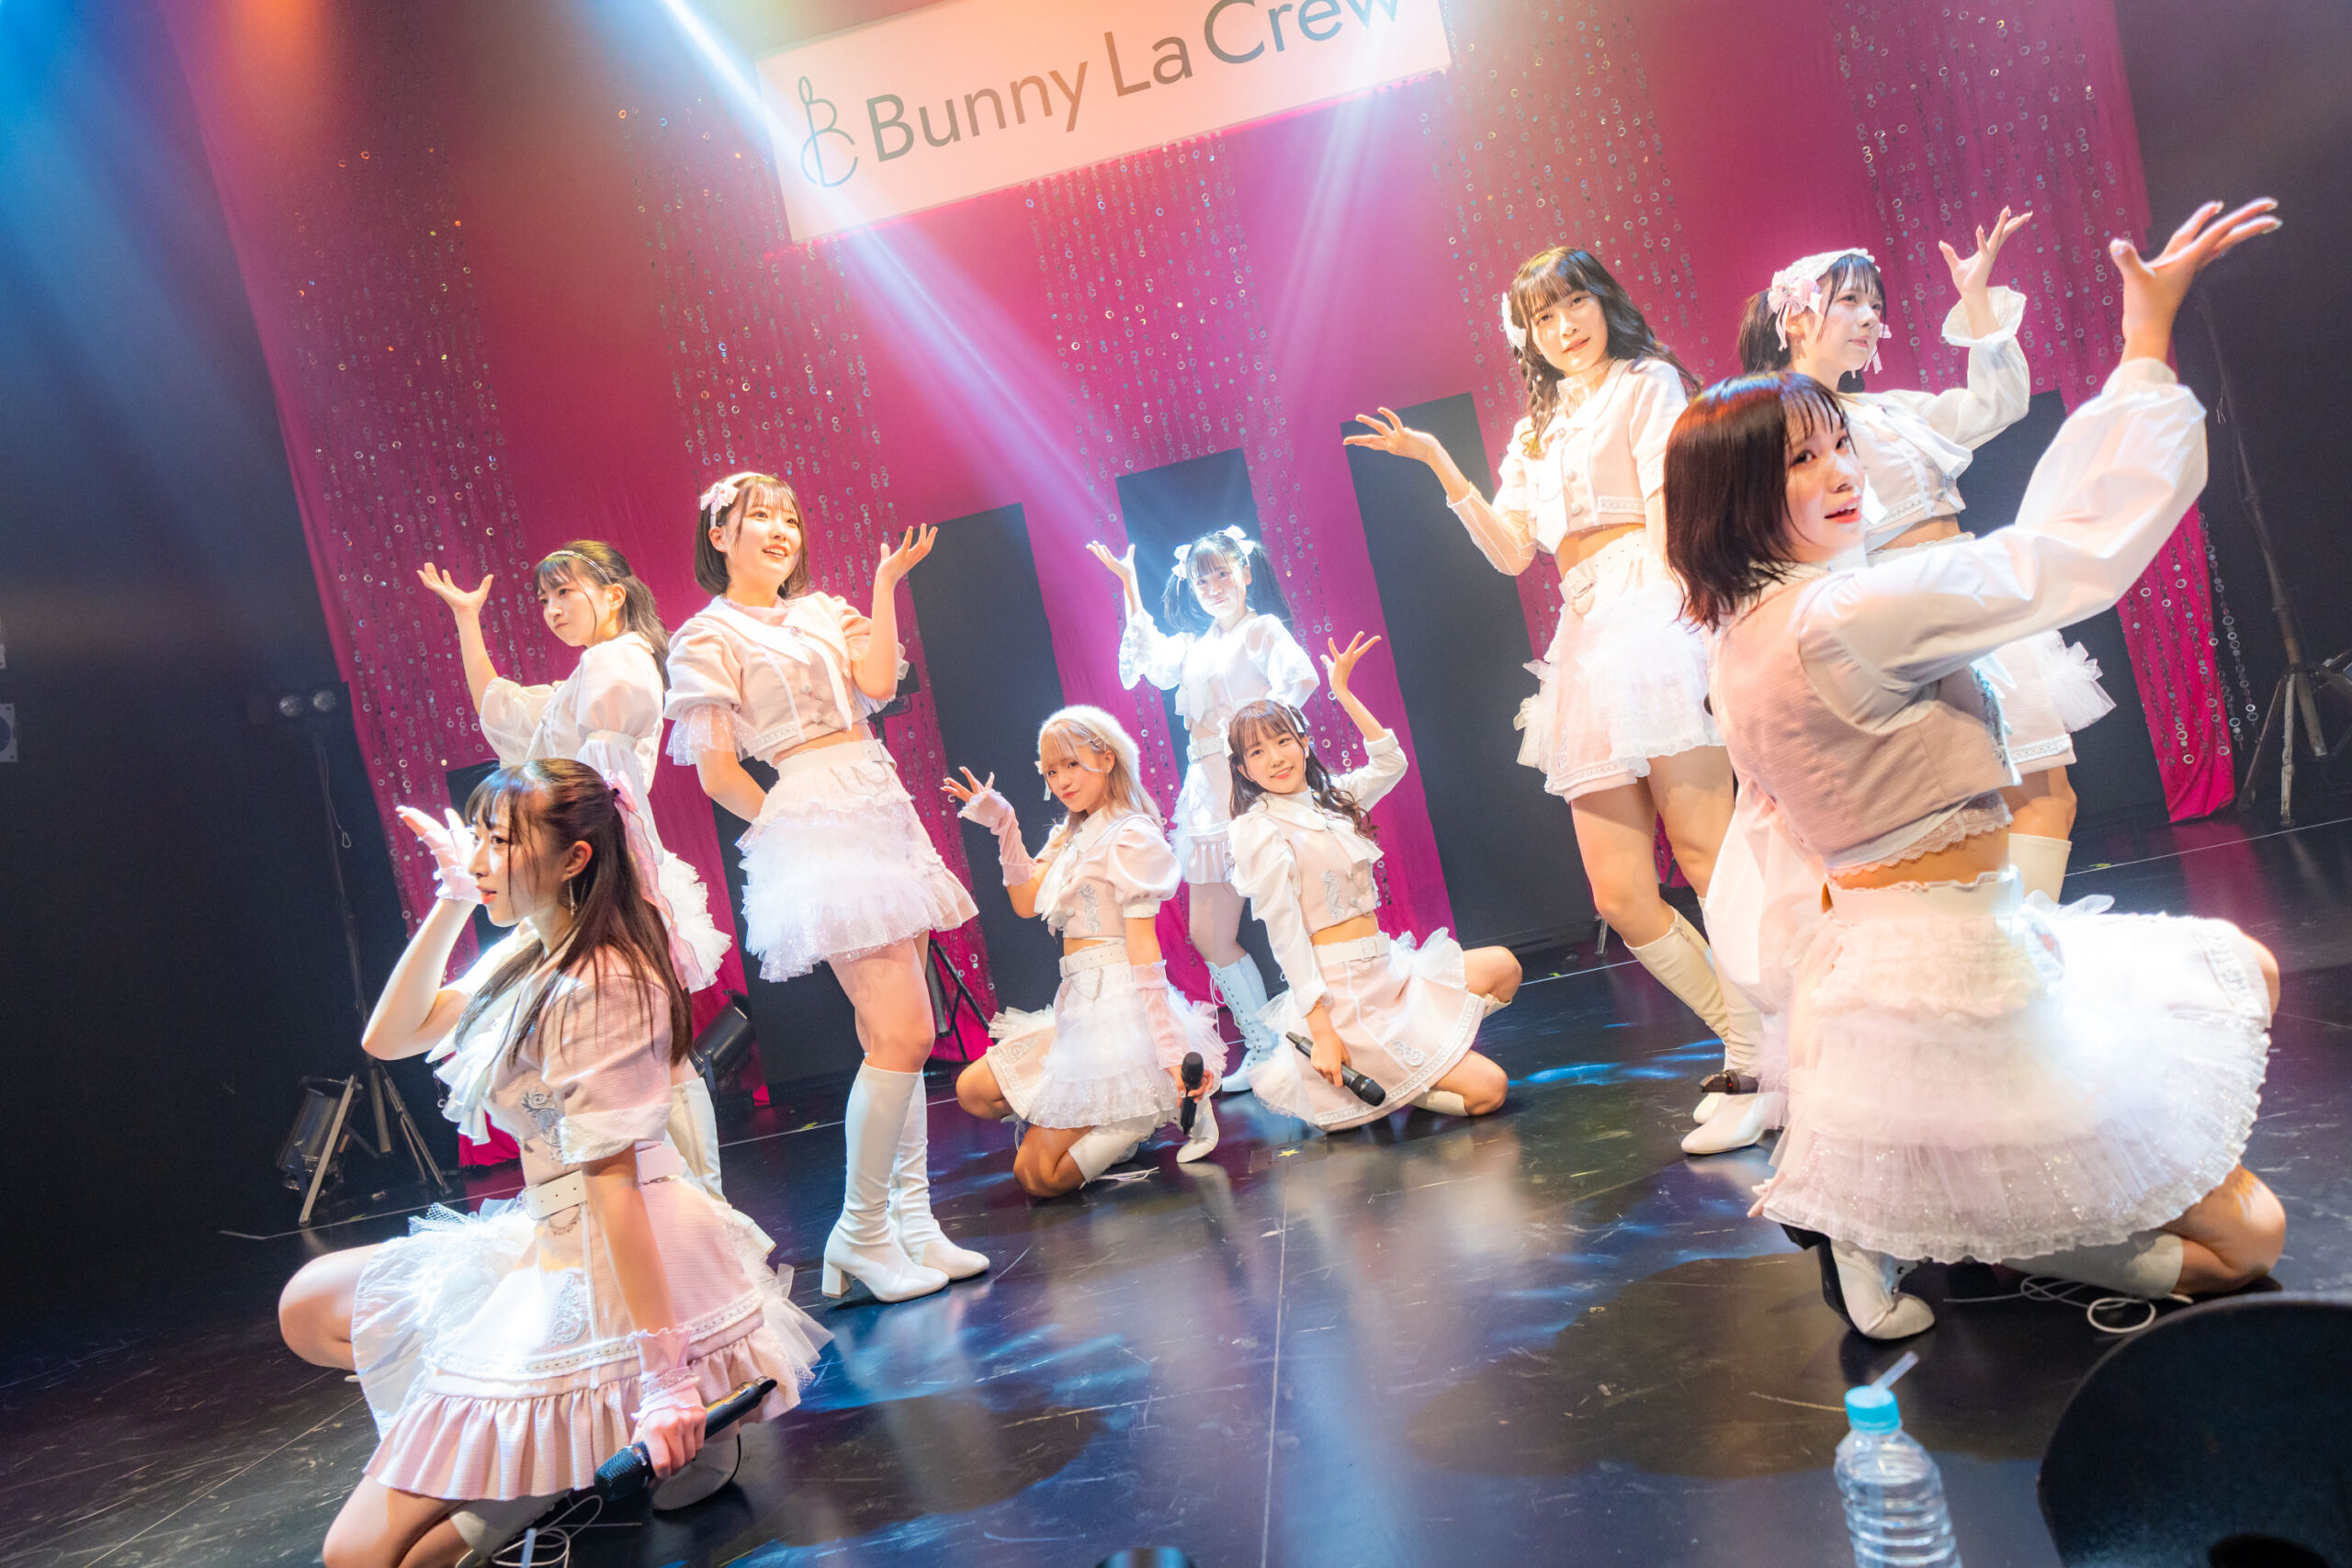 人気沸騰中の超新生アイドル”Bunny La Crew”が1stワンマンにてSpotify O-EAST 、Zepp Fukuokaでの2都市2ndワンマンLIVE開催を発表「皆さんともっと大きな会場で、素敵な景色を見られるように」：Bunny La Crew